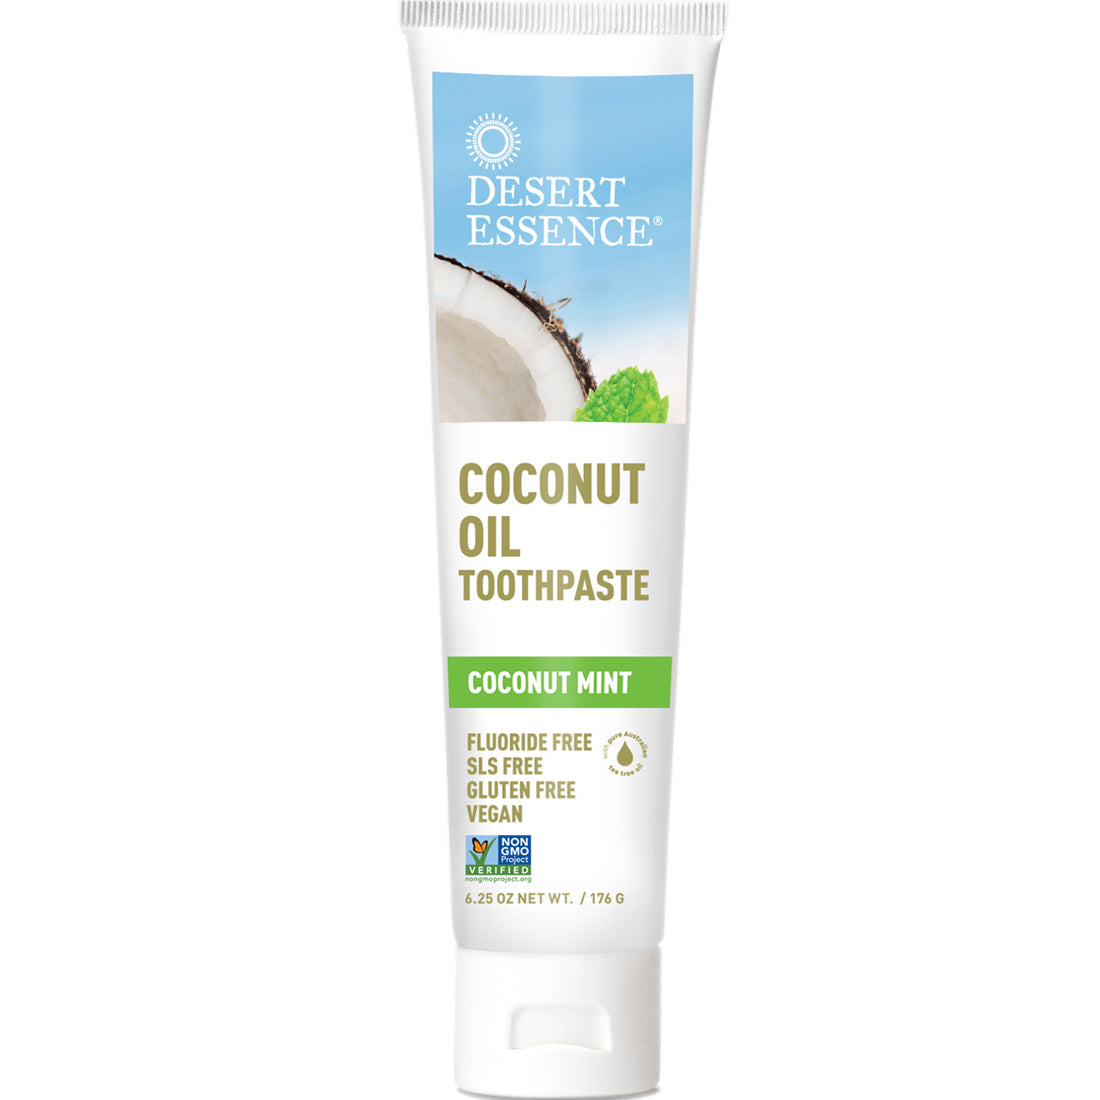 Desert Essence Coconut Oil Toothpaste, 176g